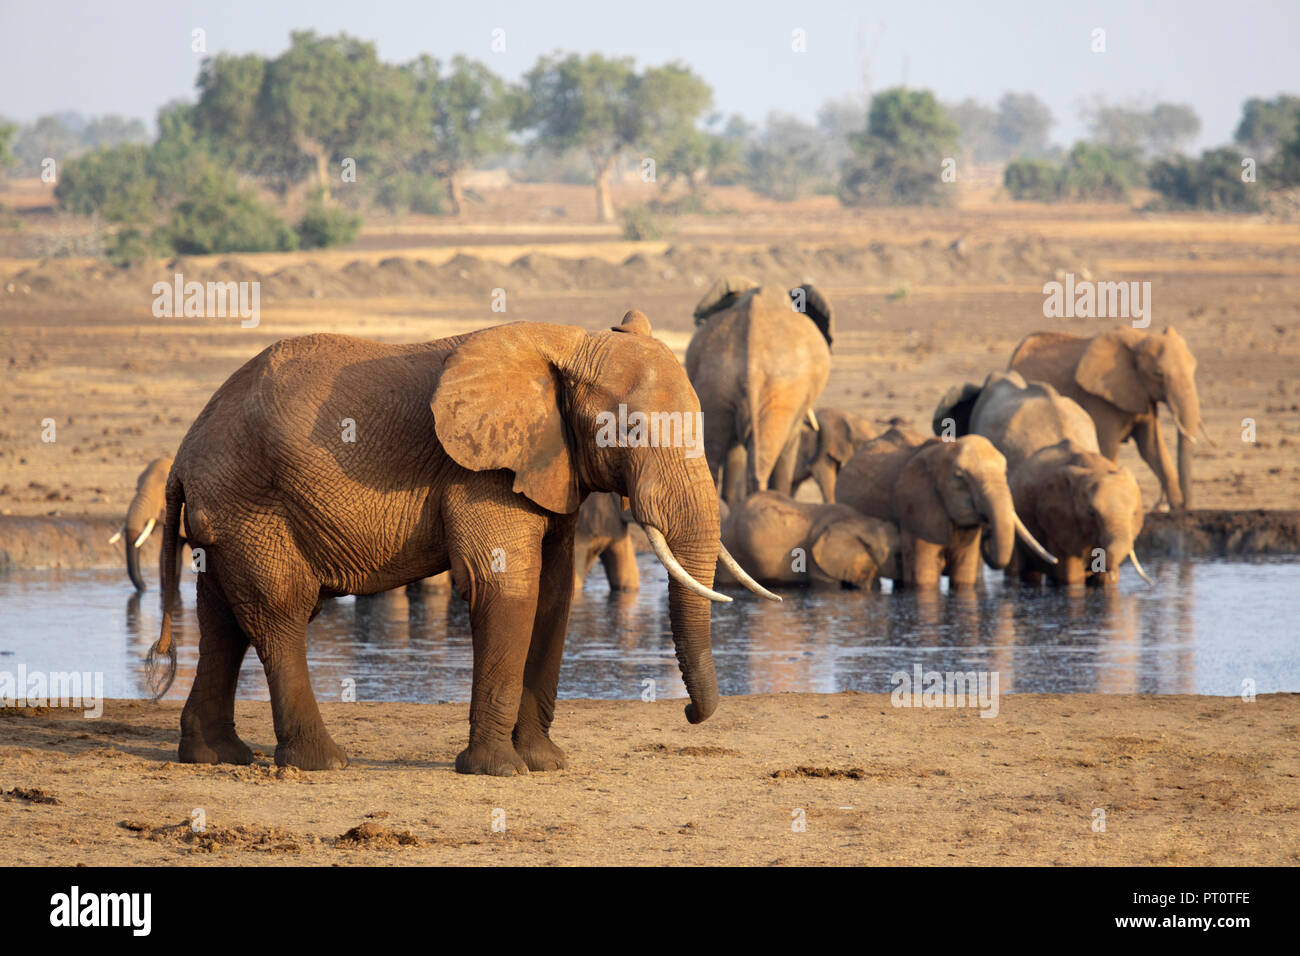 El Parque Nacional de Tsavo East, Kenya, AFRICA: una manada de elefantes africanos en el abrevadero en la sabana seca en el sol de la tarde Foto de stock